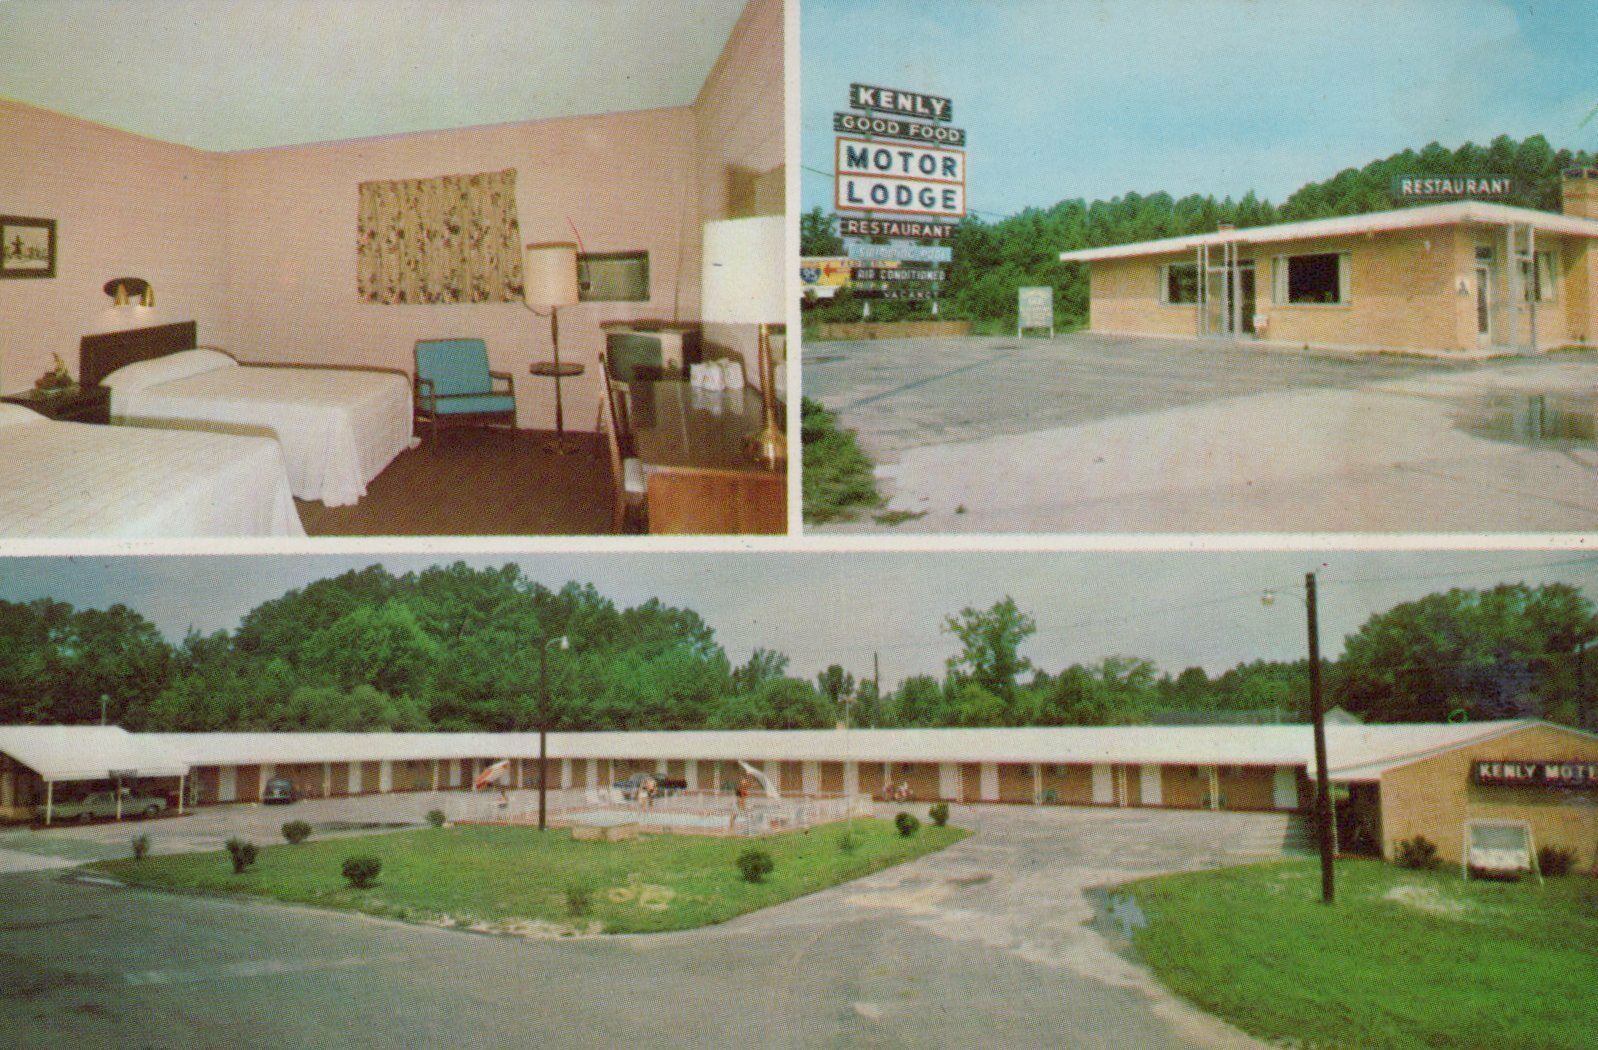 Kenly Motor Lodge & Restaurant Kenly N.C. Posted Vintage Chrome Post Card